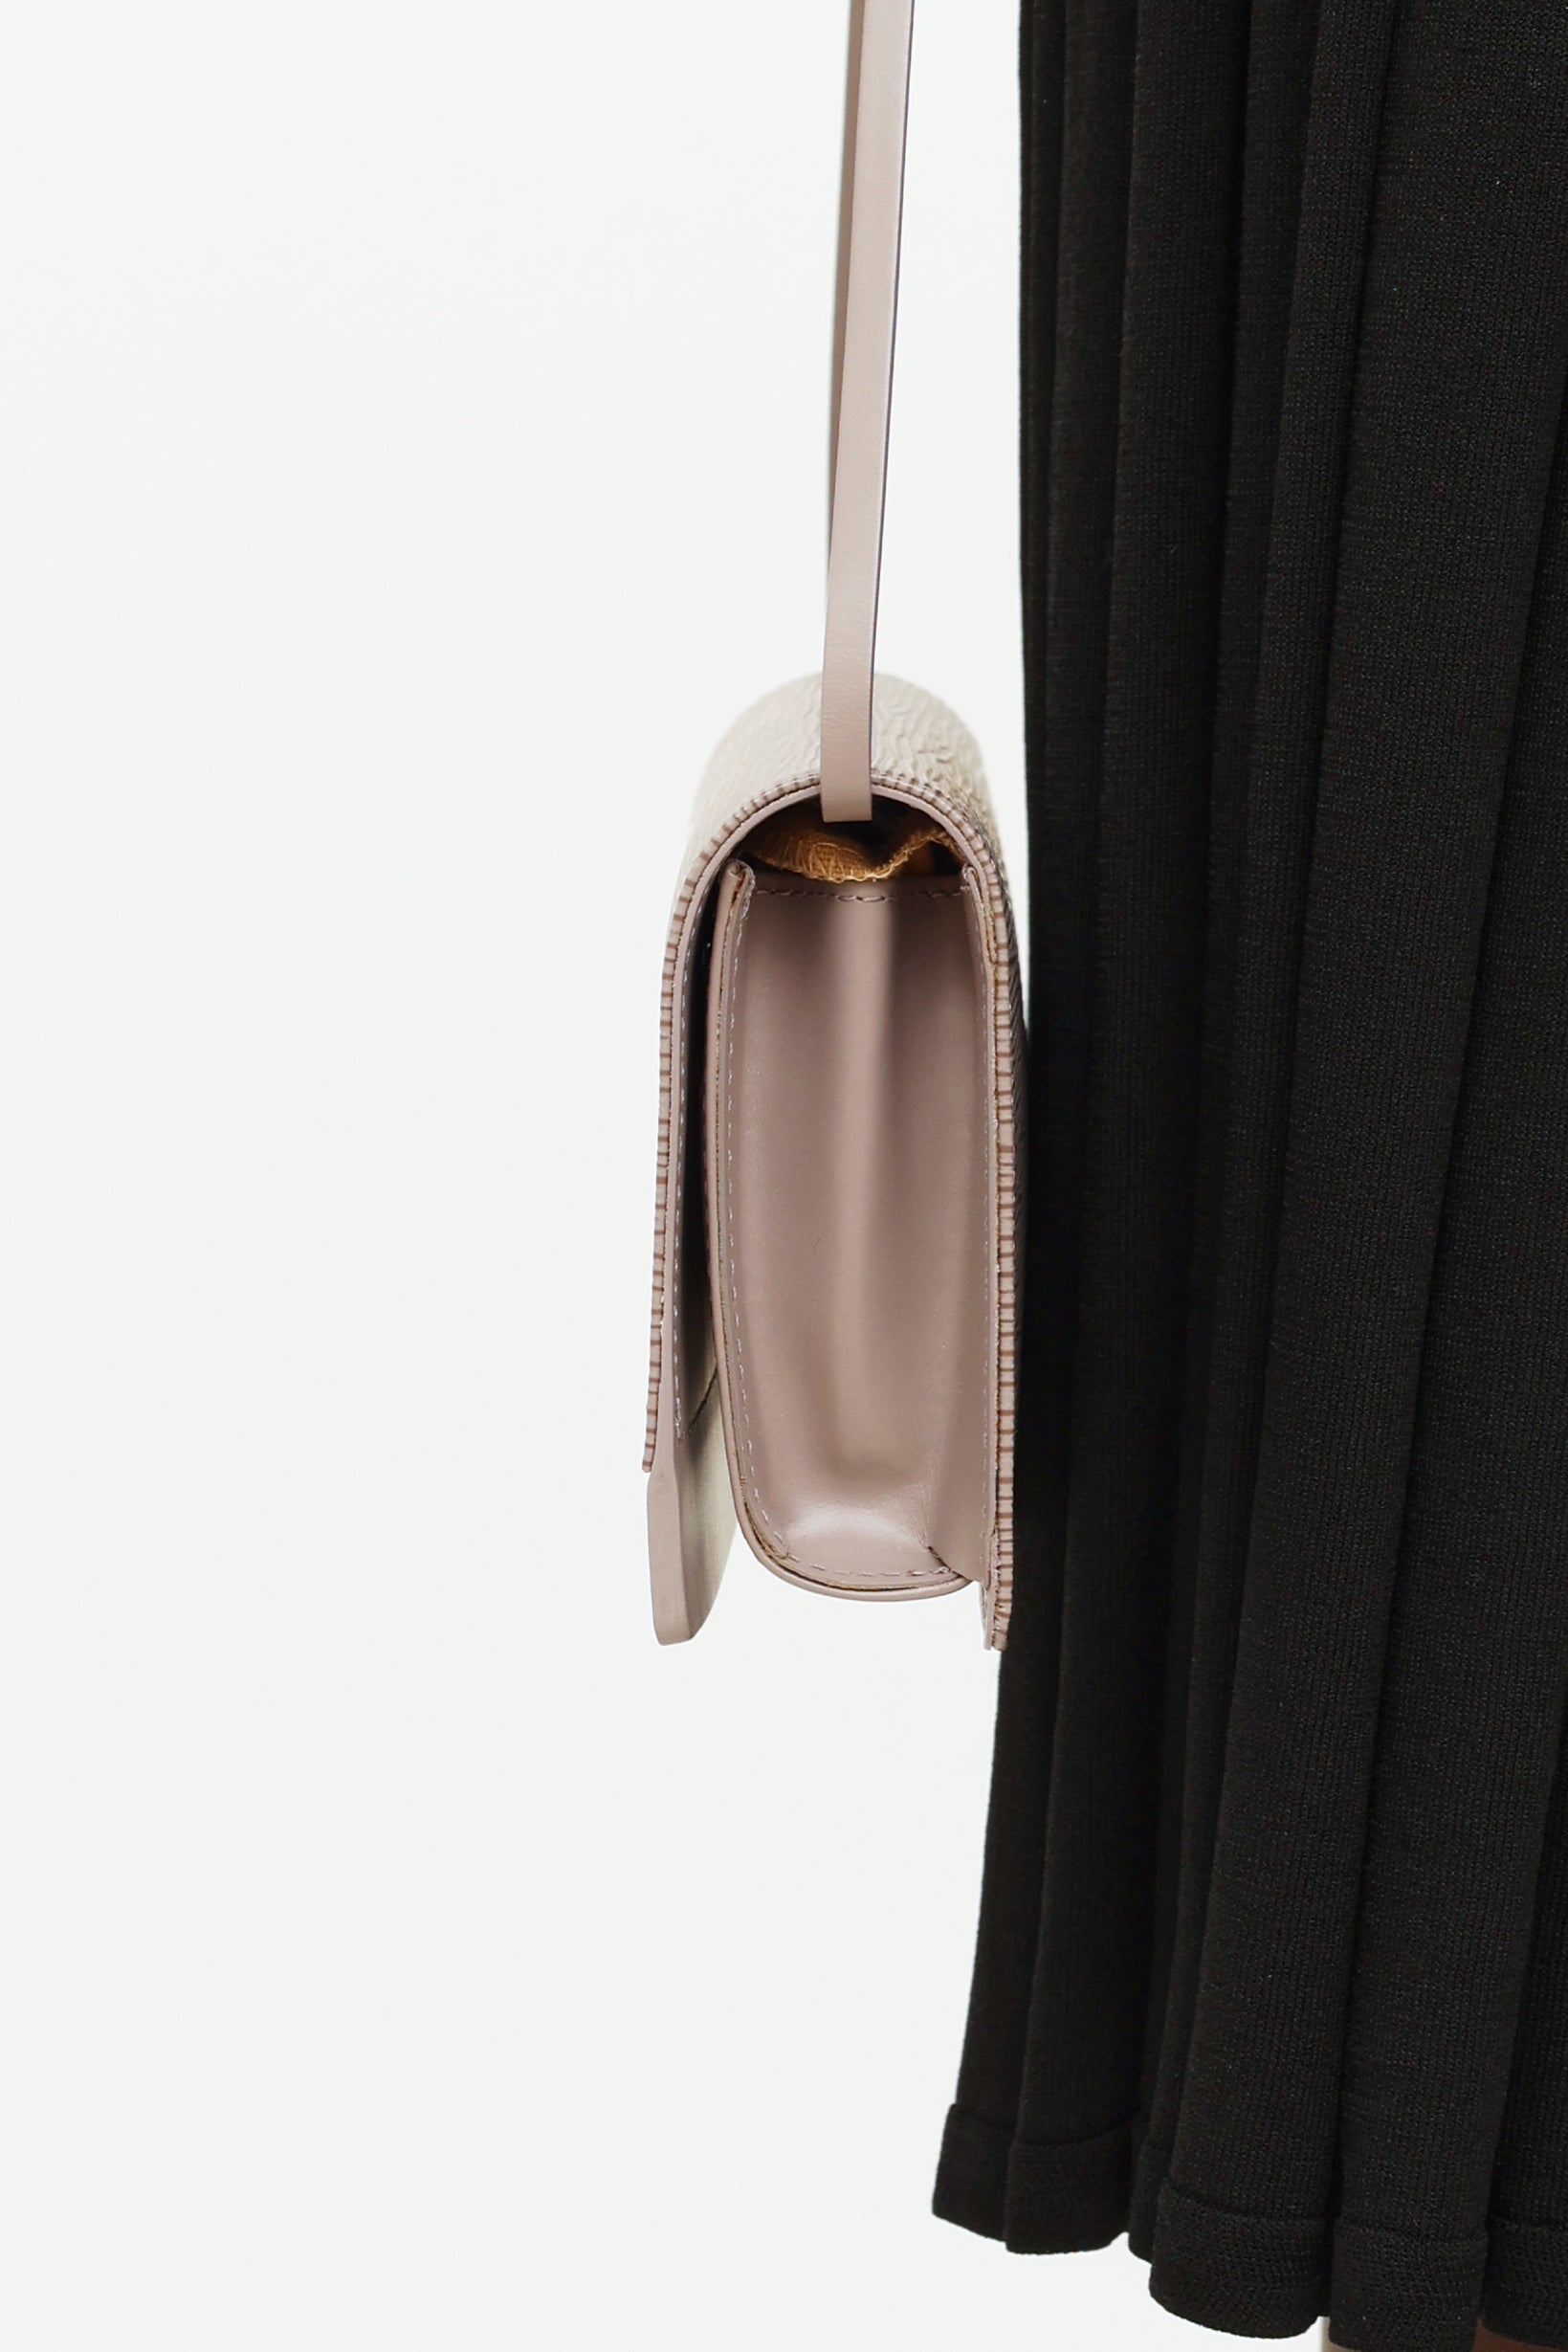 Louis Vuitton Honfleur Handbag 306992